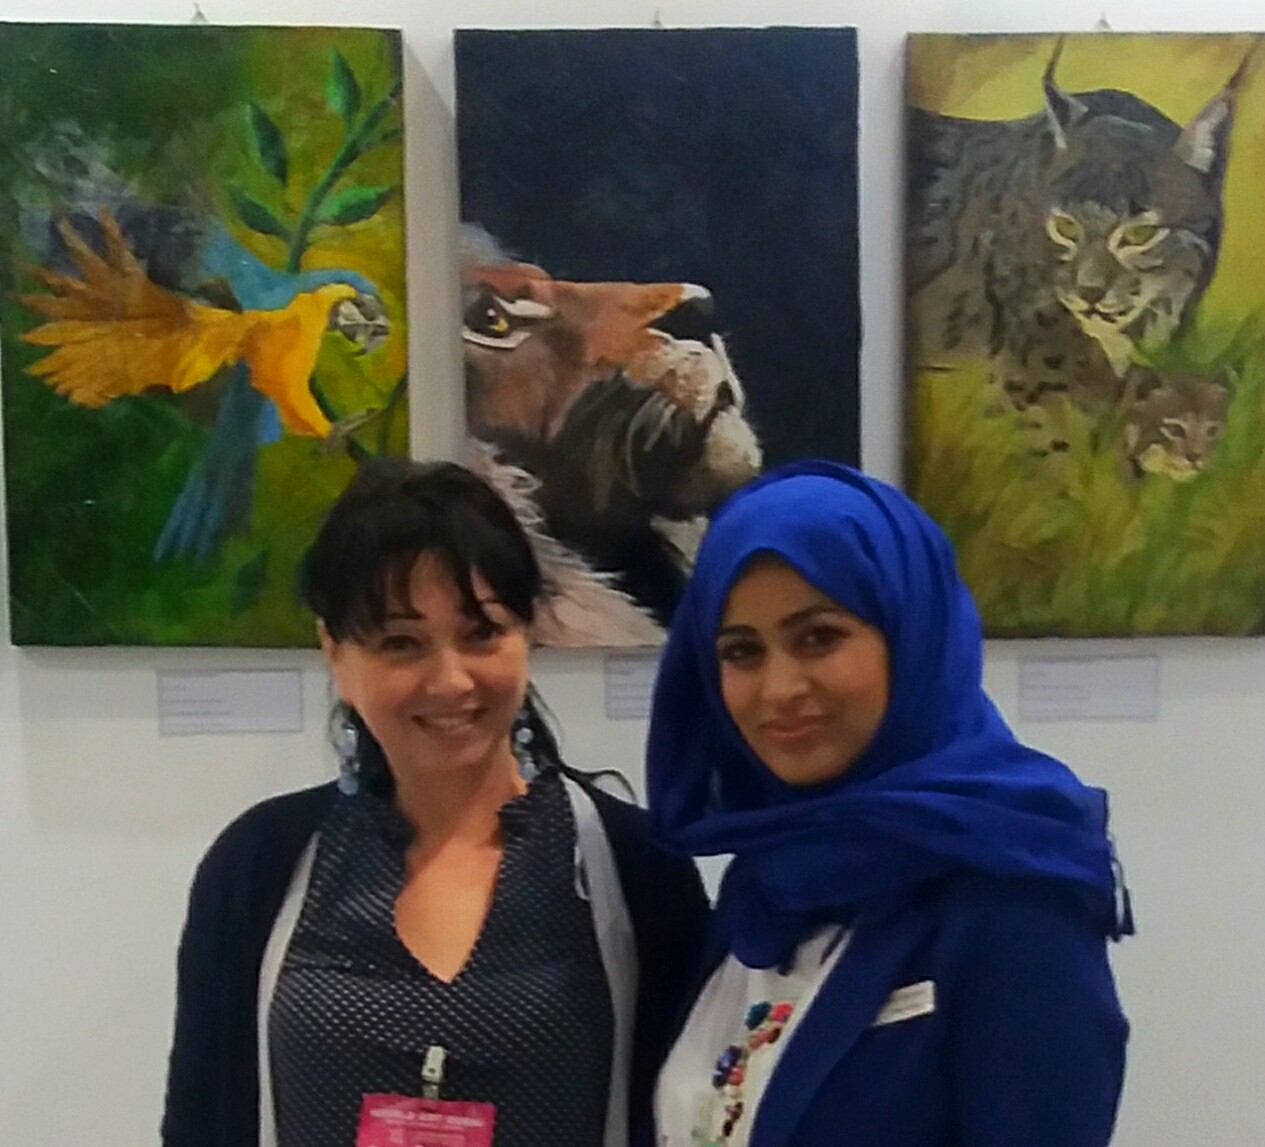 Alessandra Anca Palel curatrice d'arte con l'organizzatrice della fiera internazionale d'arte Art World Trade Center Dubai, 2019